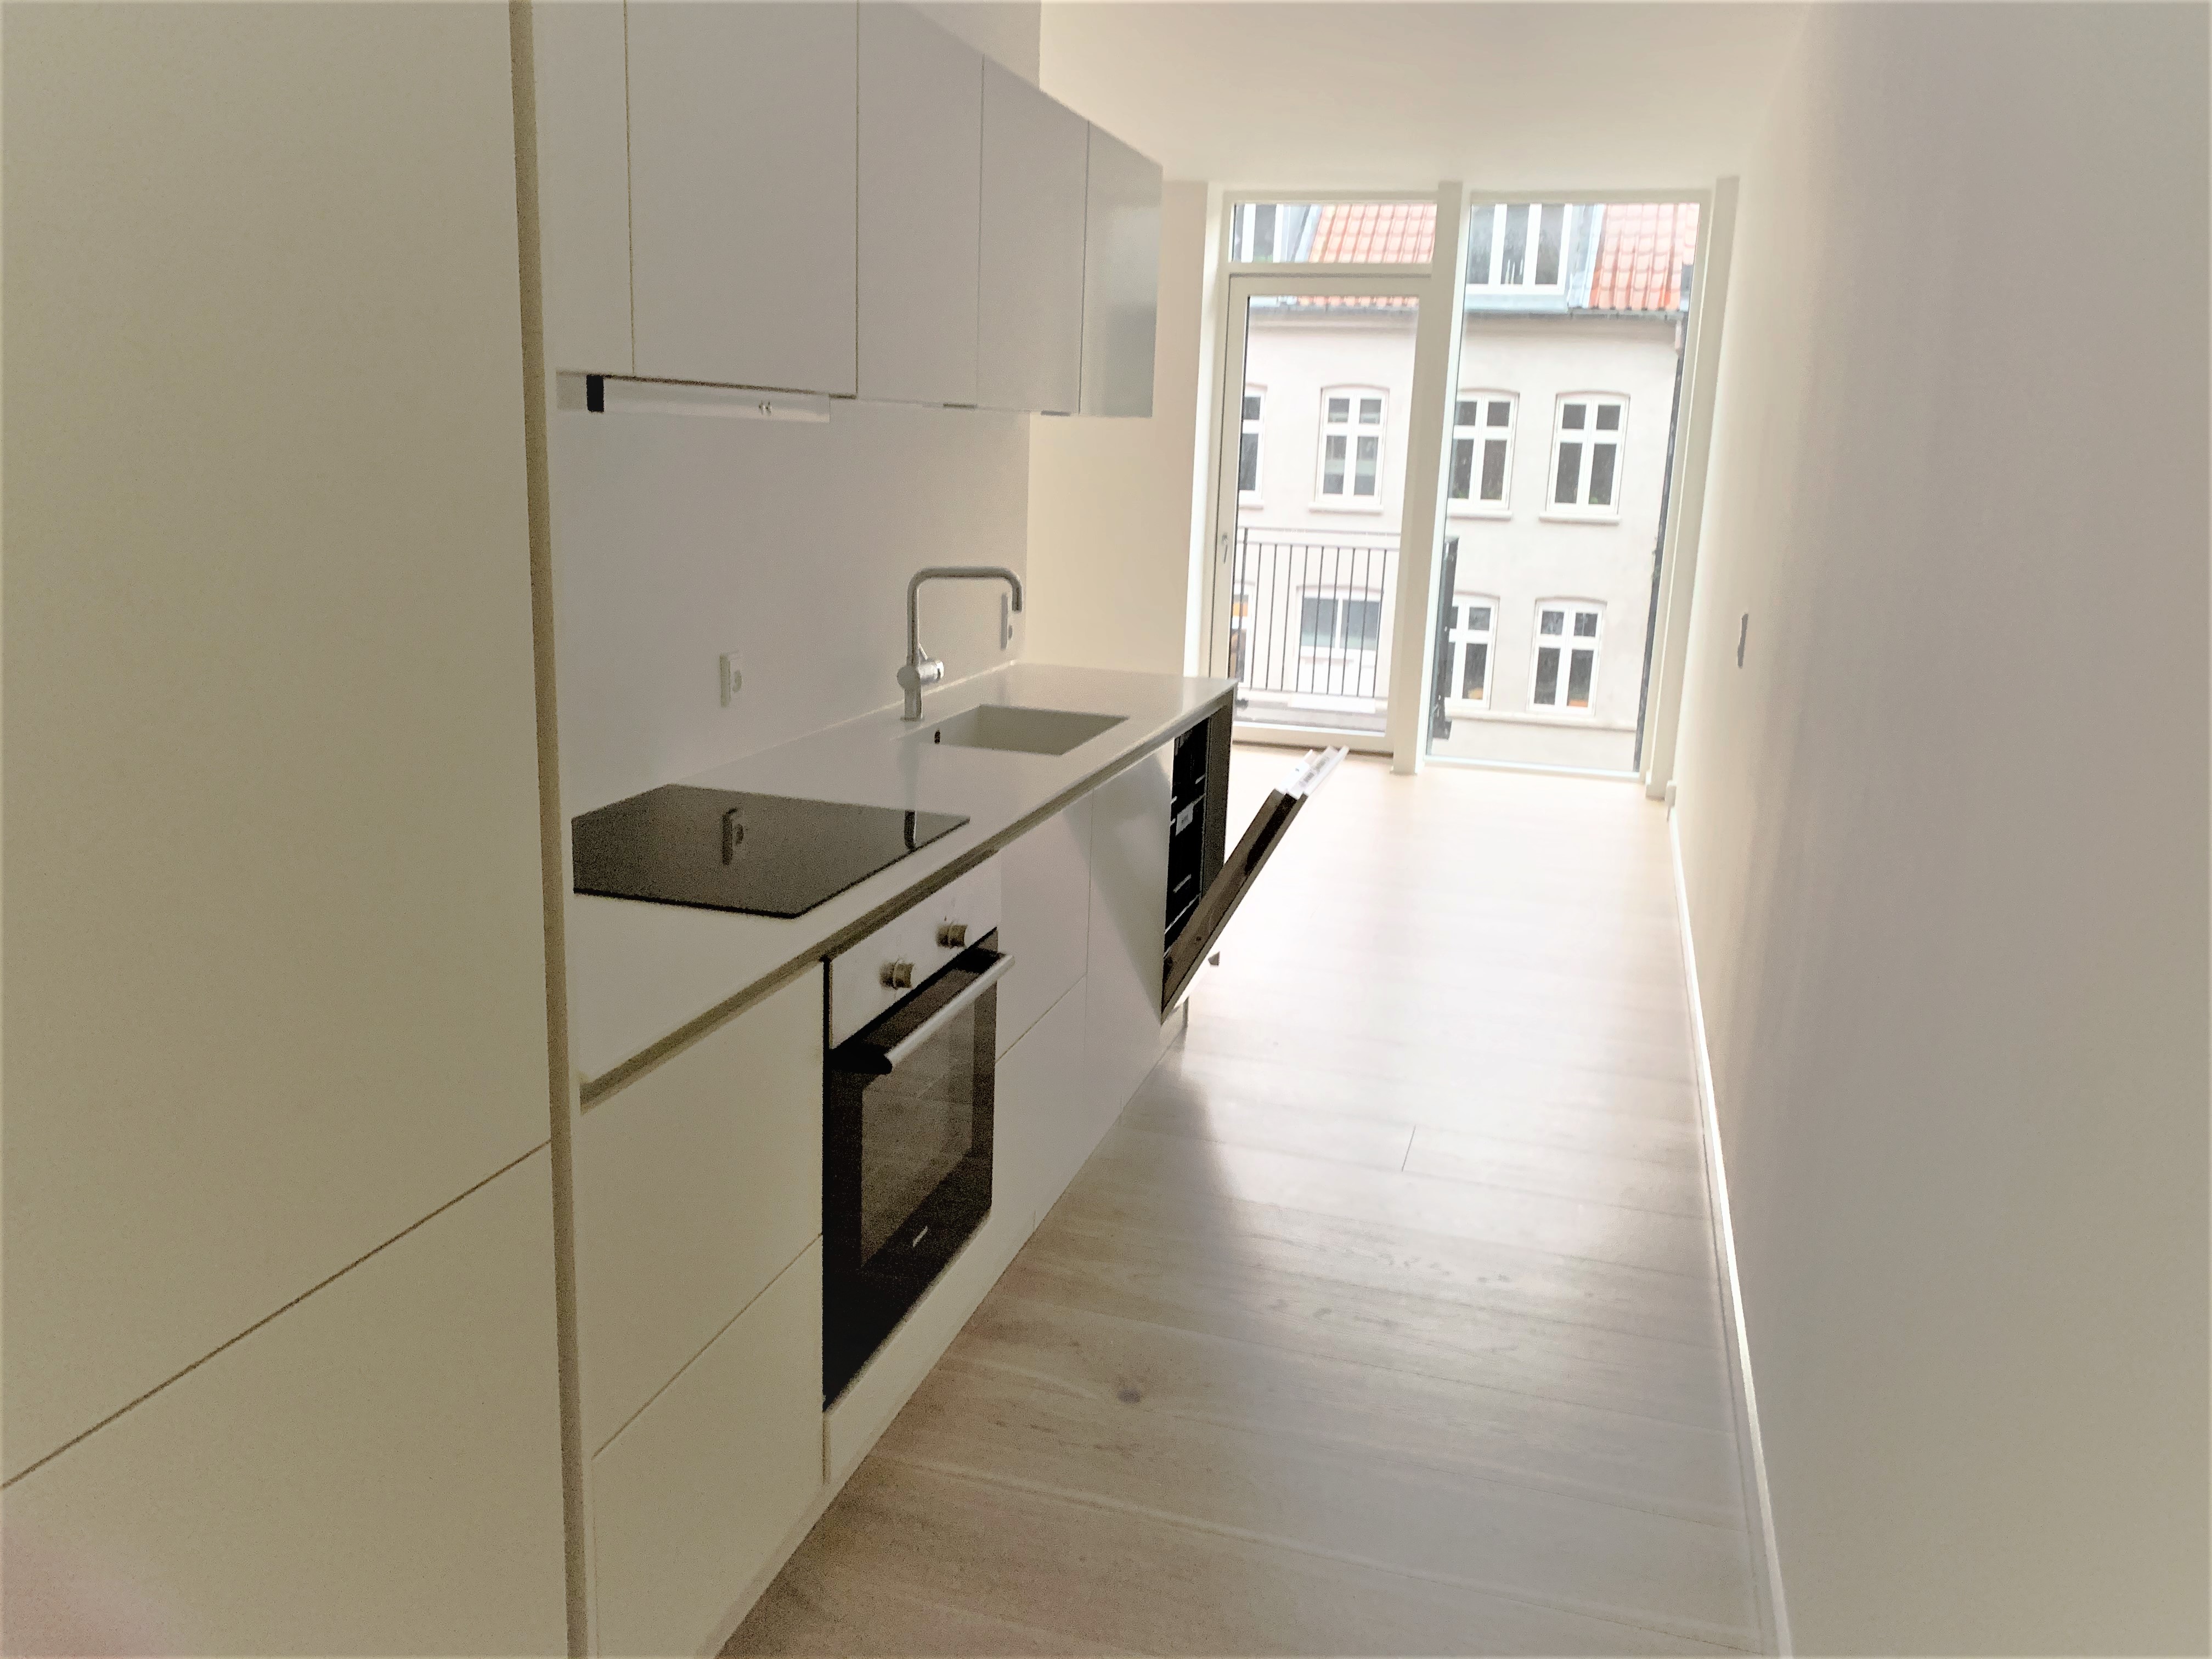 2 bedroom apartment on Nørrebro